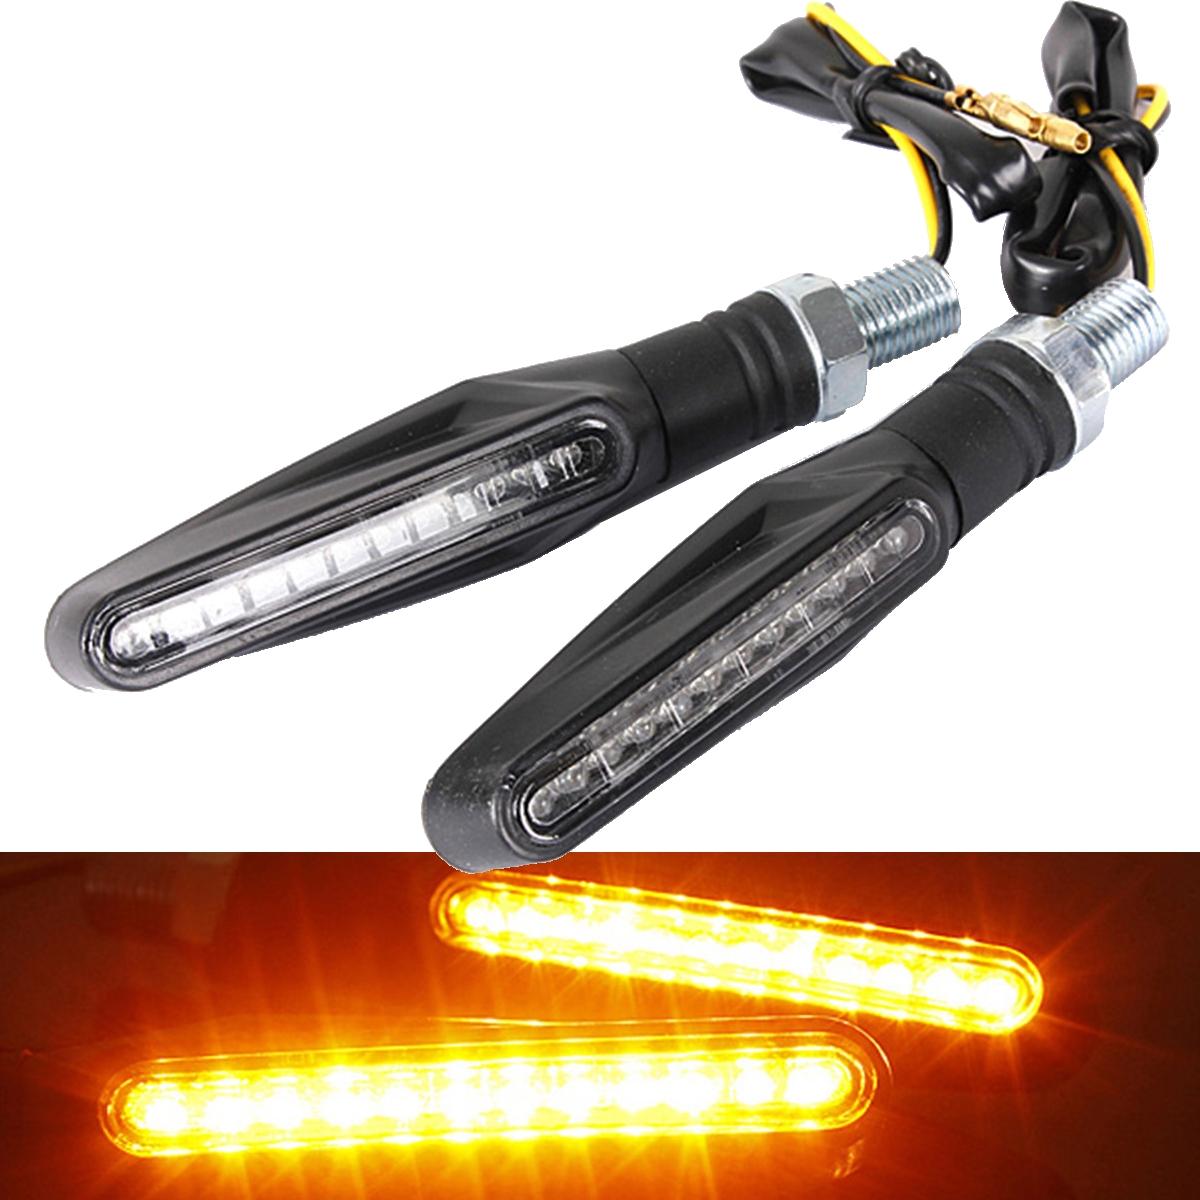 24SHOPZ 2pcs Motorcycle LED Turn Signal Indicator Blinkers Amber Lights